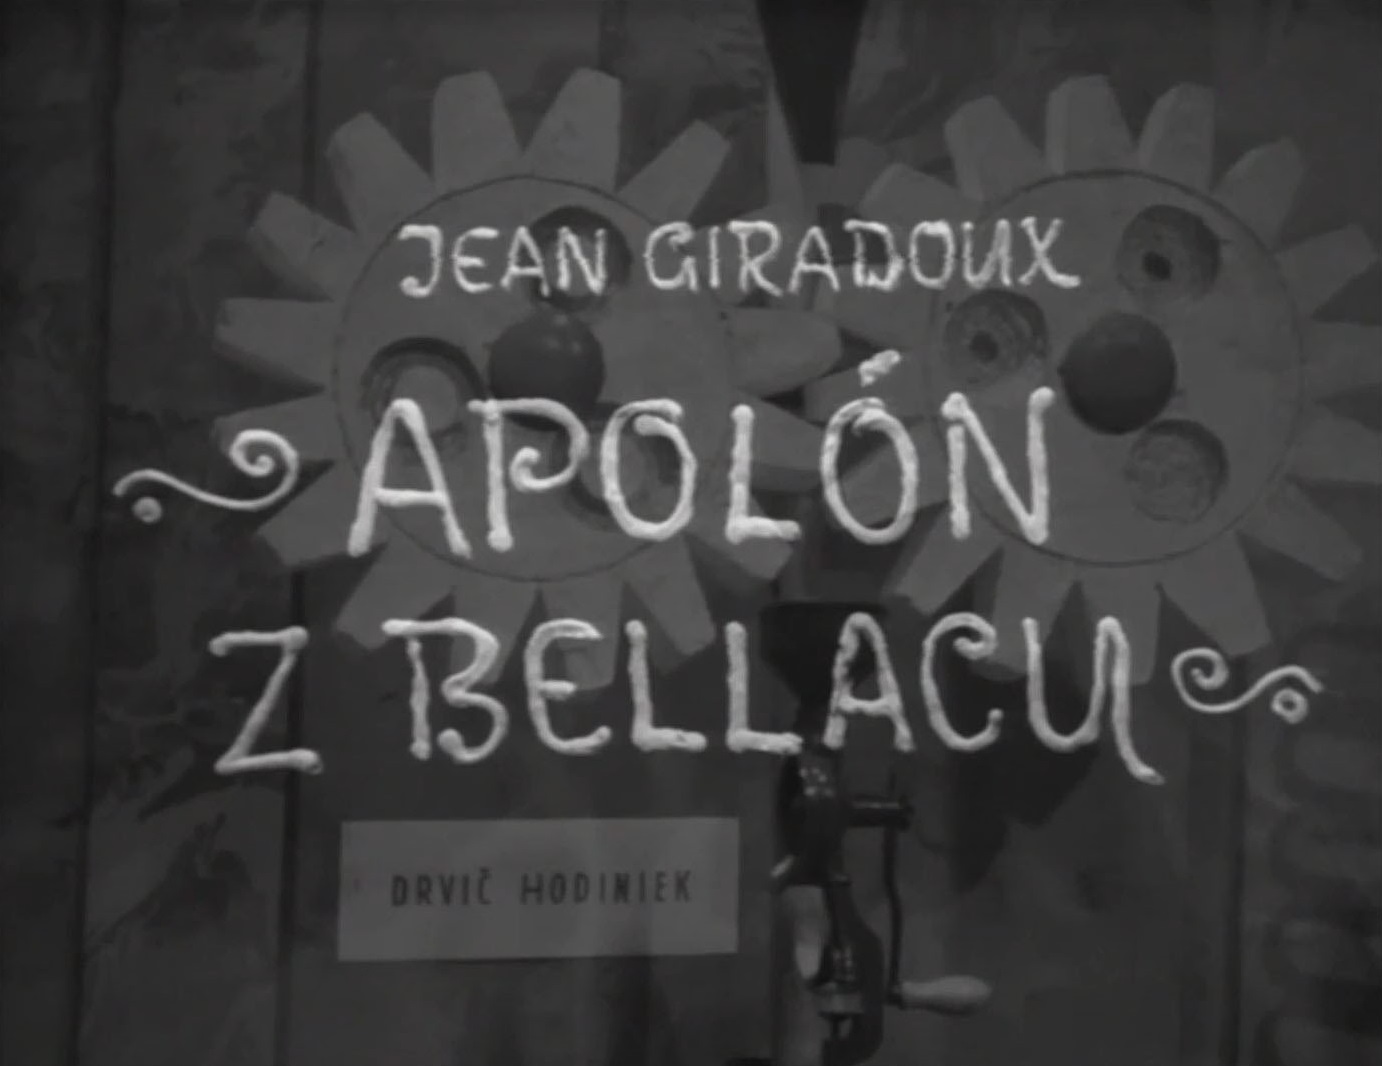 Stiahni si Filmy CZ/SK dabing Apollon z Bellacu (1972)(SK)[TvRip] = CSFD 68%